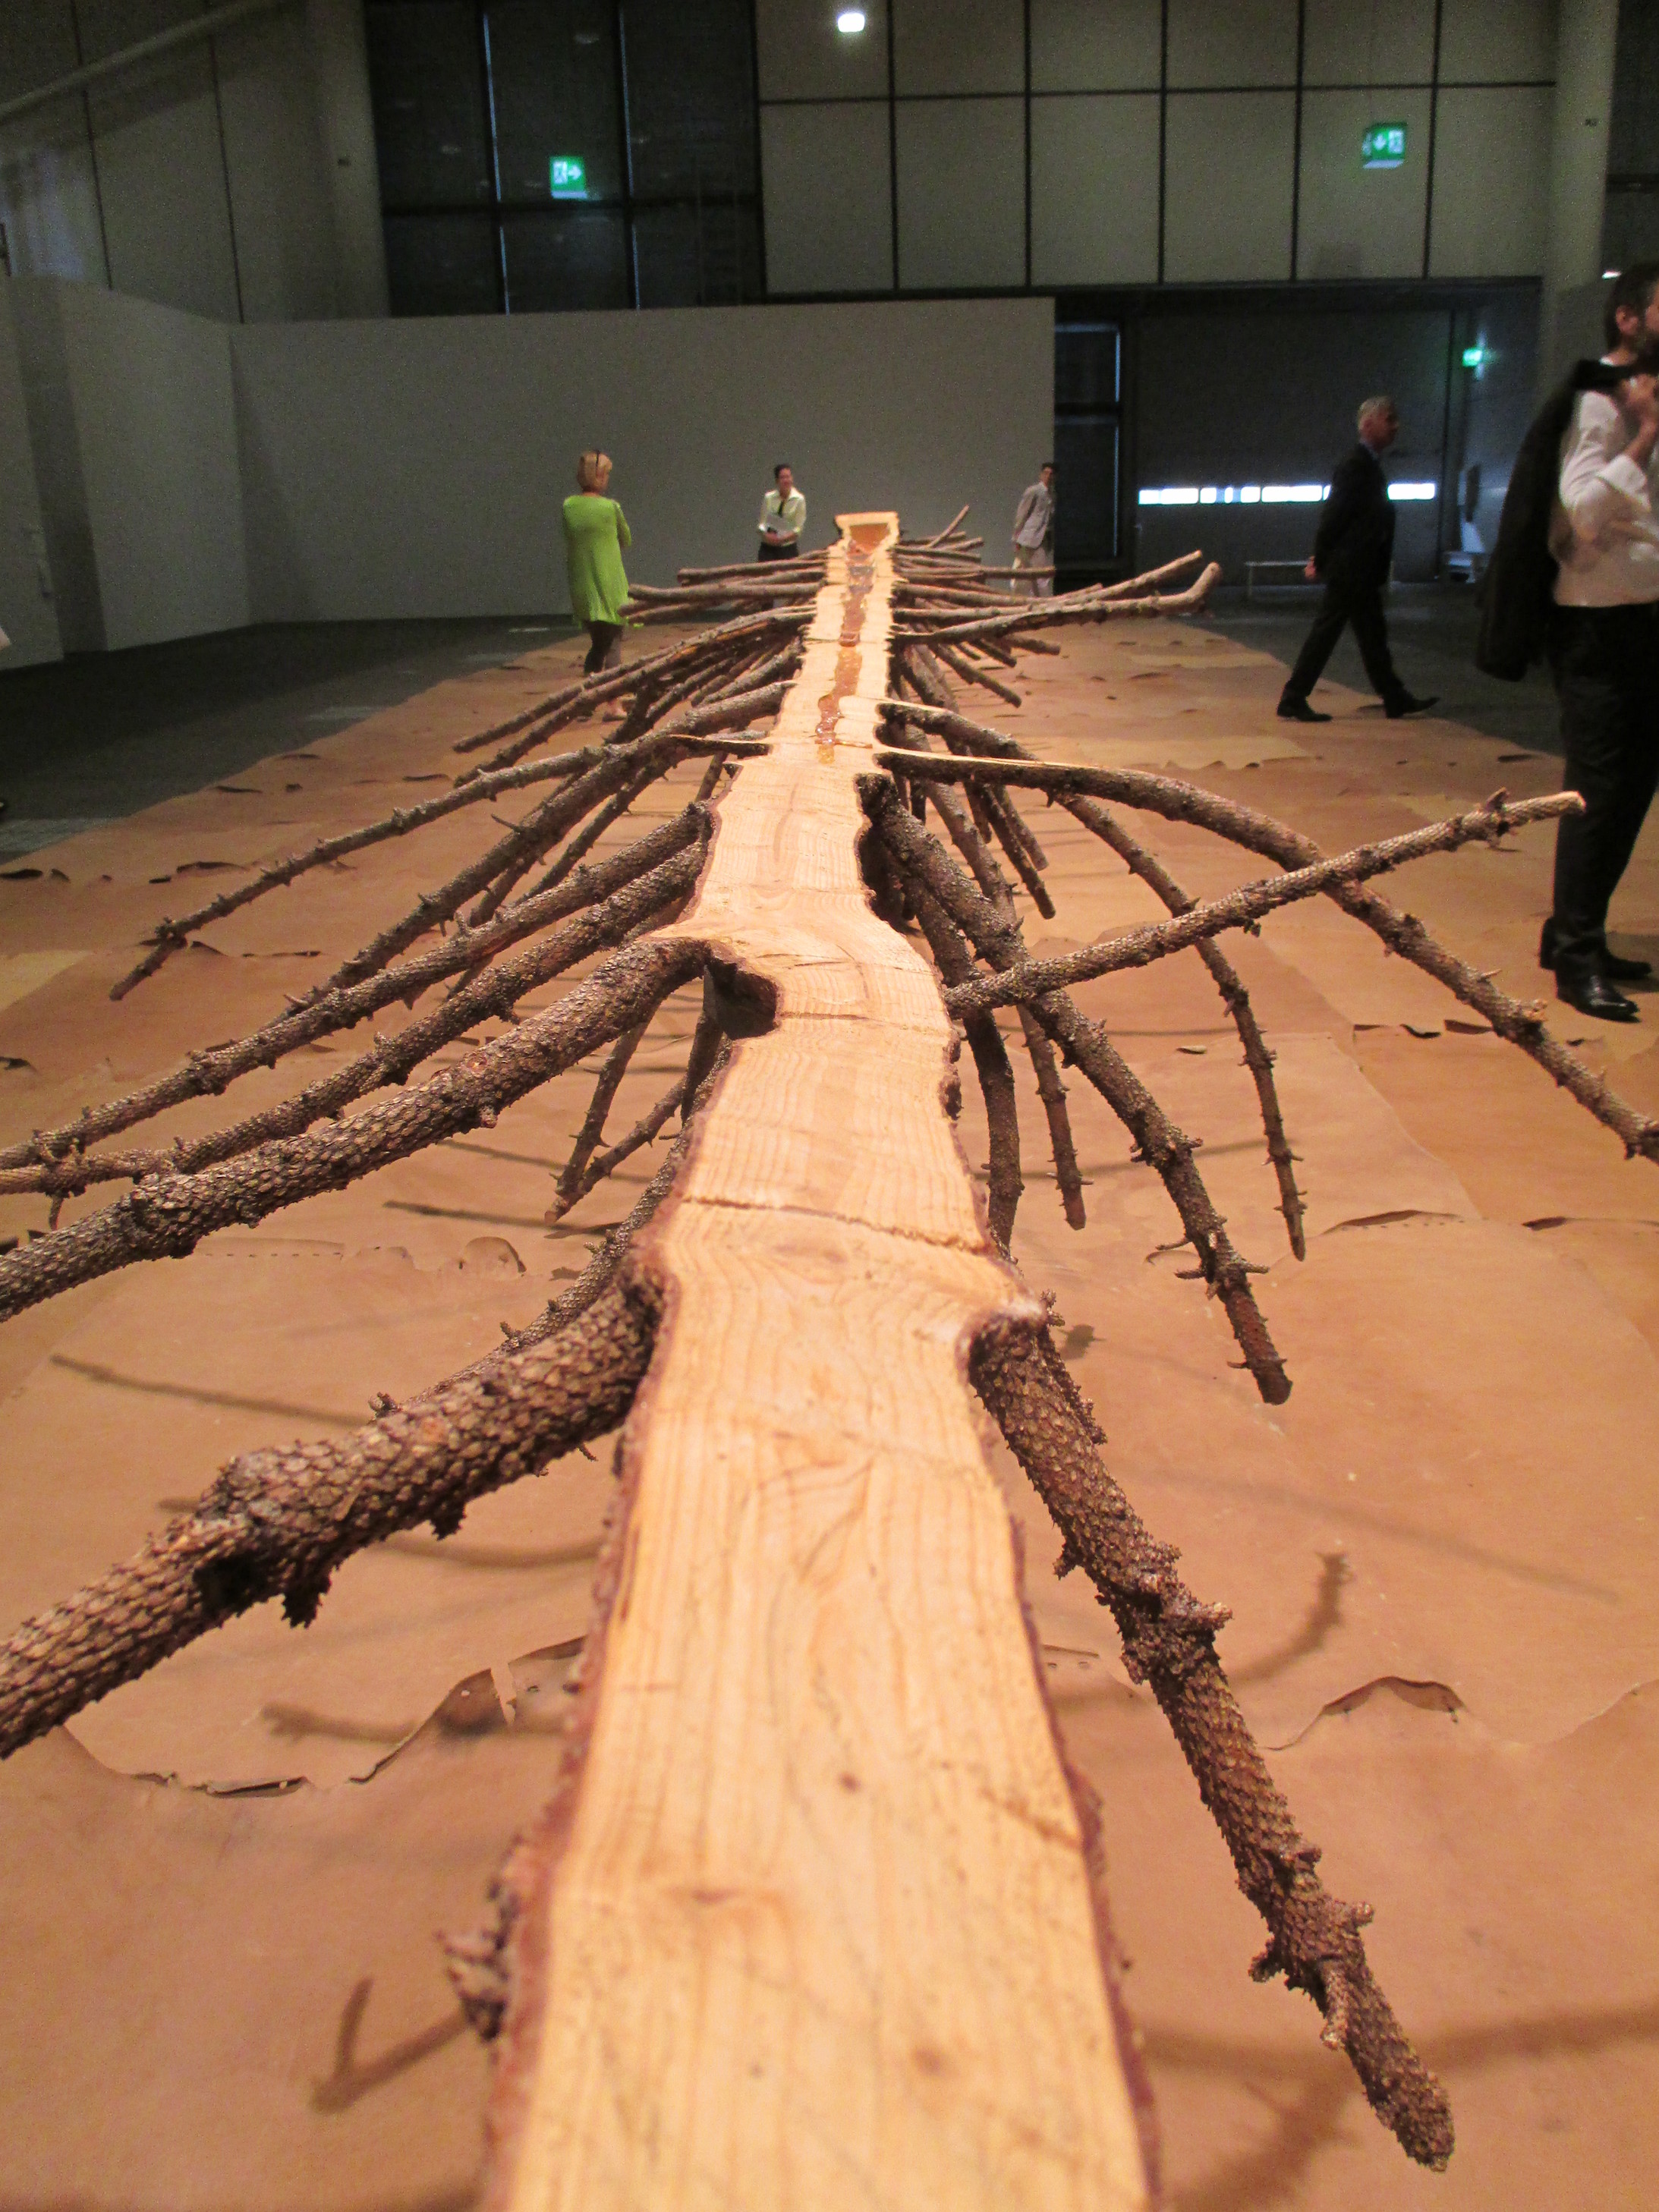 Dieses originelle Werk stammt von Giuseppe Penone (71). Der italienische Künstler hat eine 80jährige Tanne der Länge nach in zwei Teile zerlegt. Sie liegen auf einem „Teppich“ bestehend aus Lederstücken (gegerbte Häute)